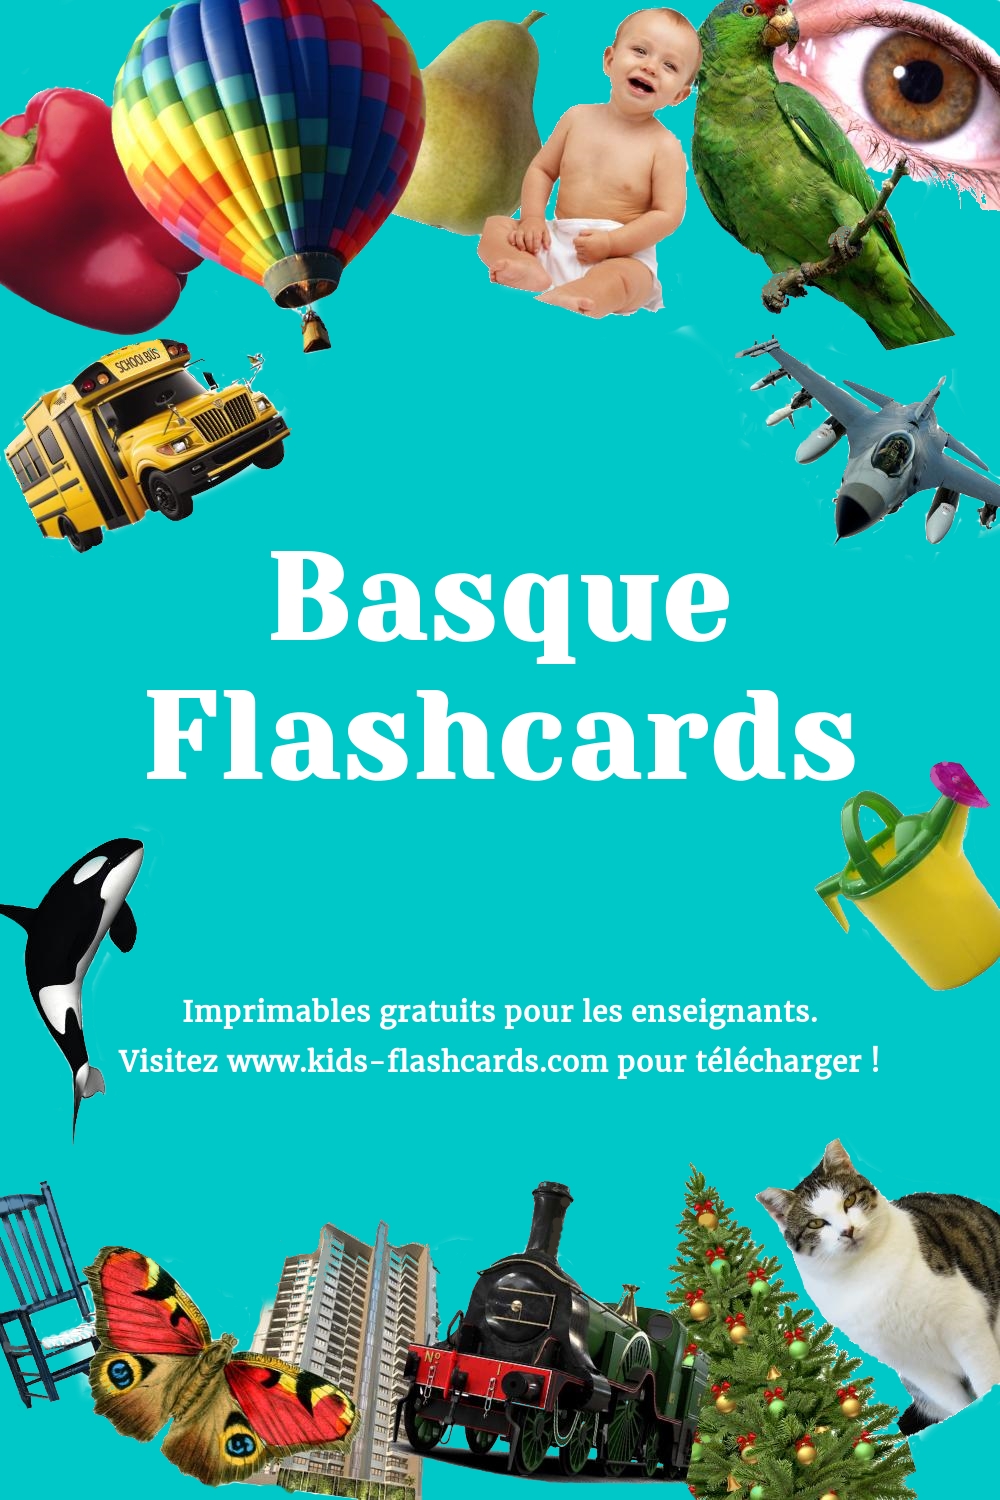 Imprimables gratuits en Basque